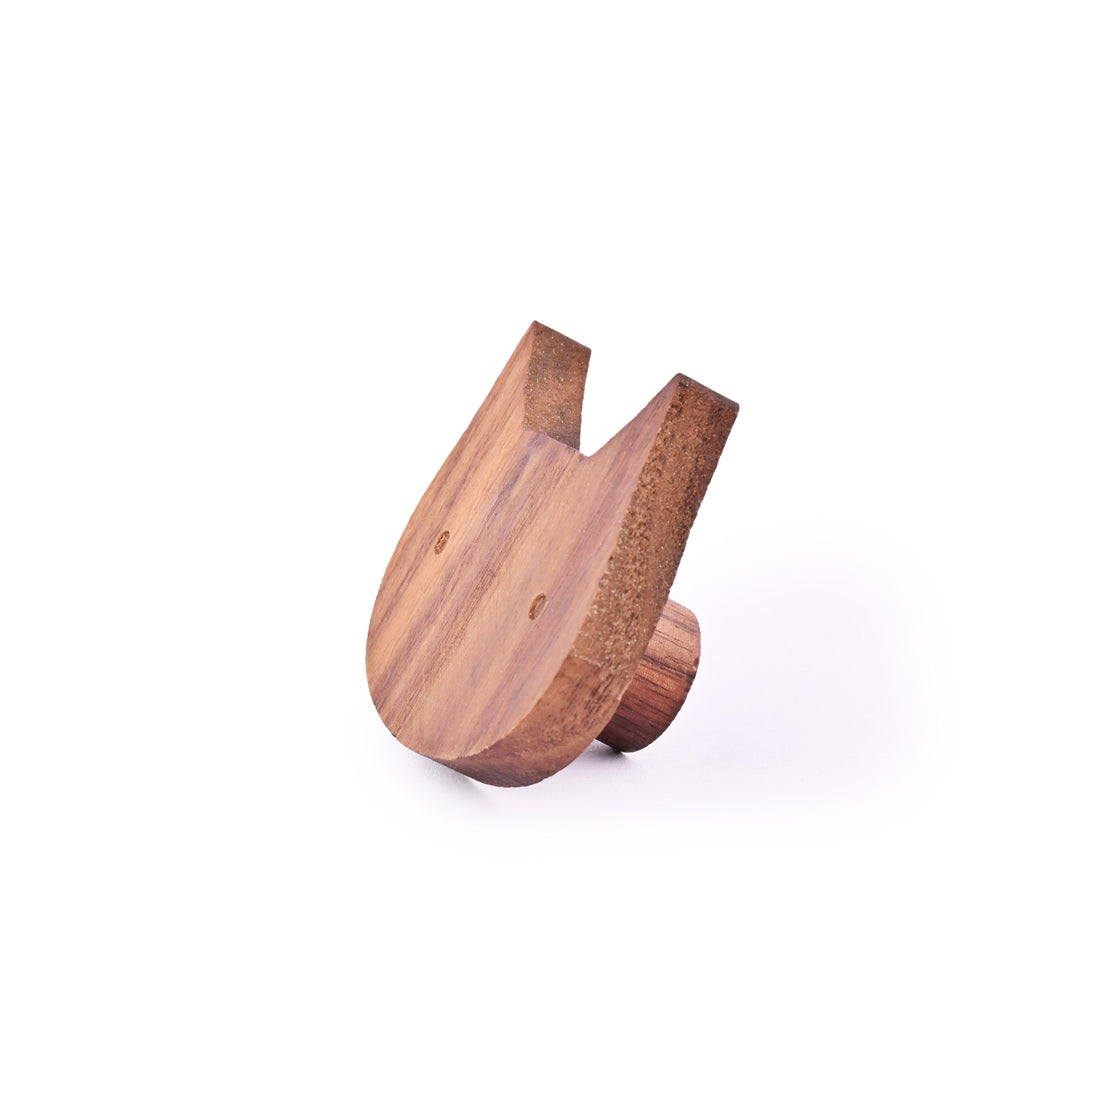 Cat Wooden Knob Hook 55mm / Walnut / Wood - M A N T A R A